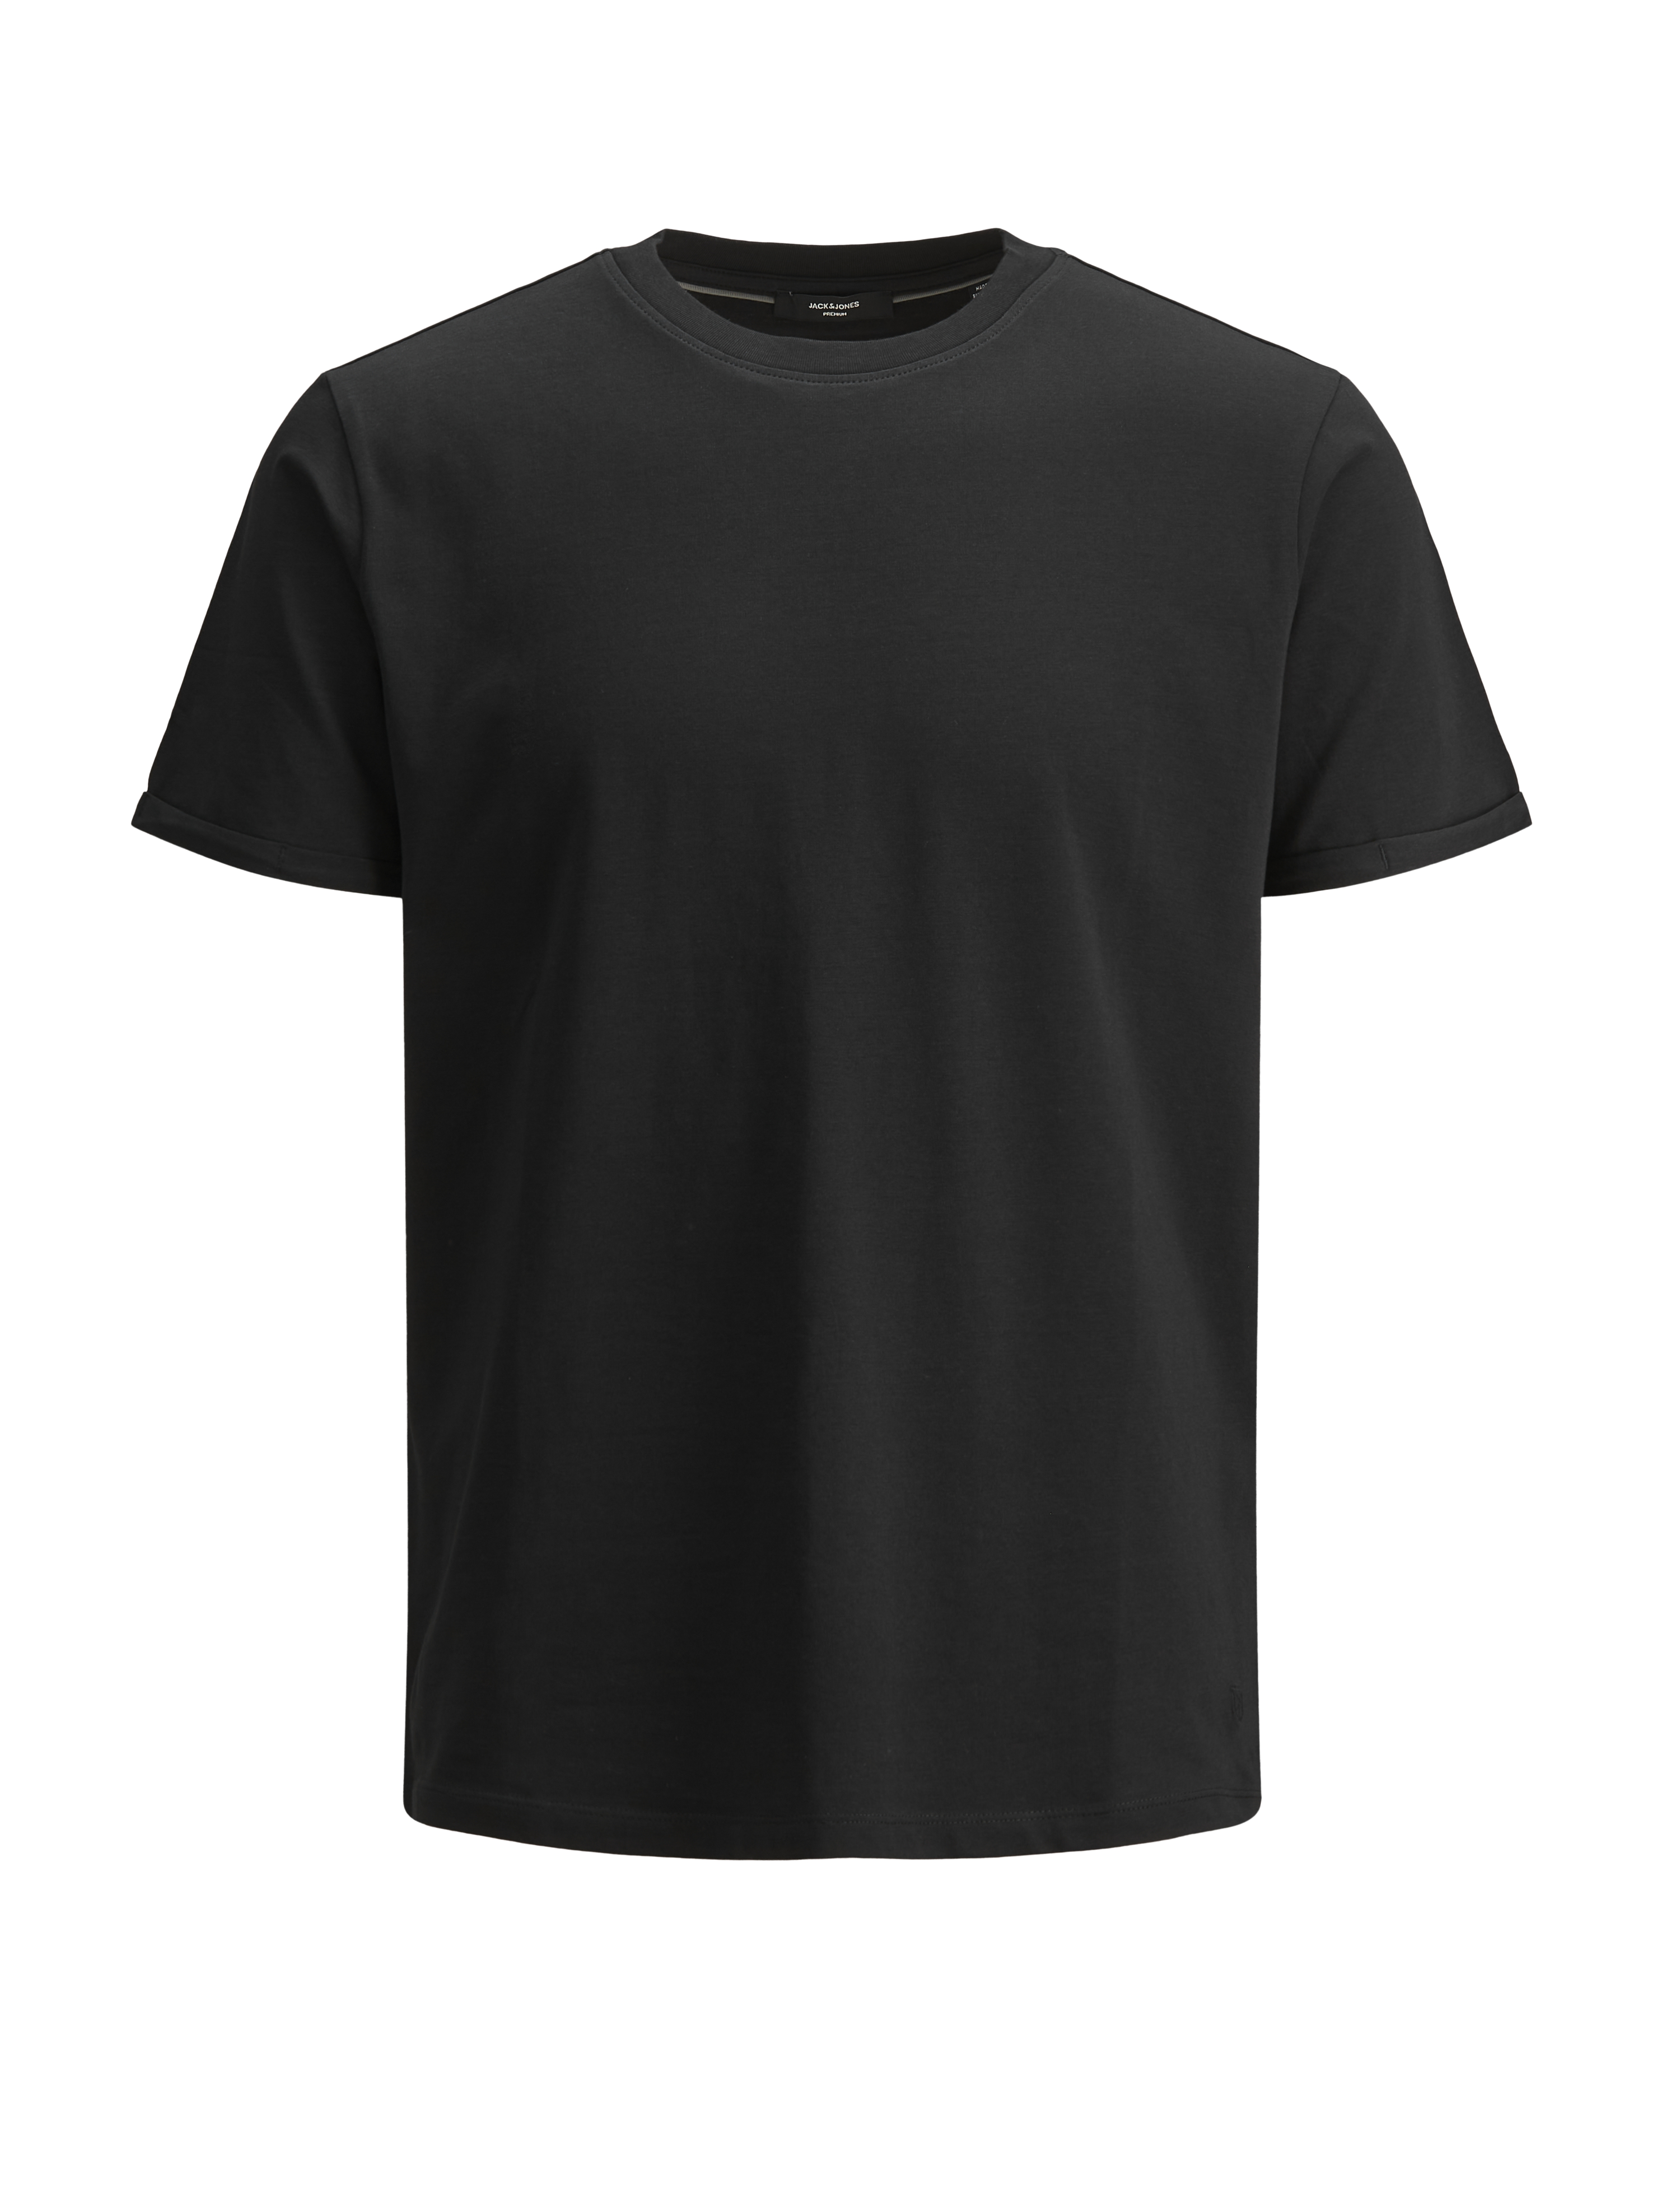 Odzież Mężczyźni JACK & JONES Koszulka w kolorze Czarnym 